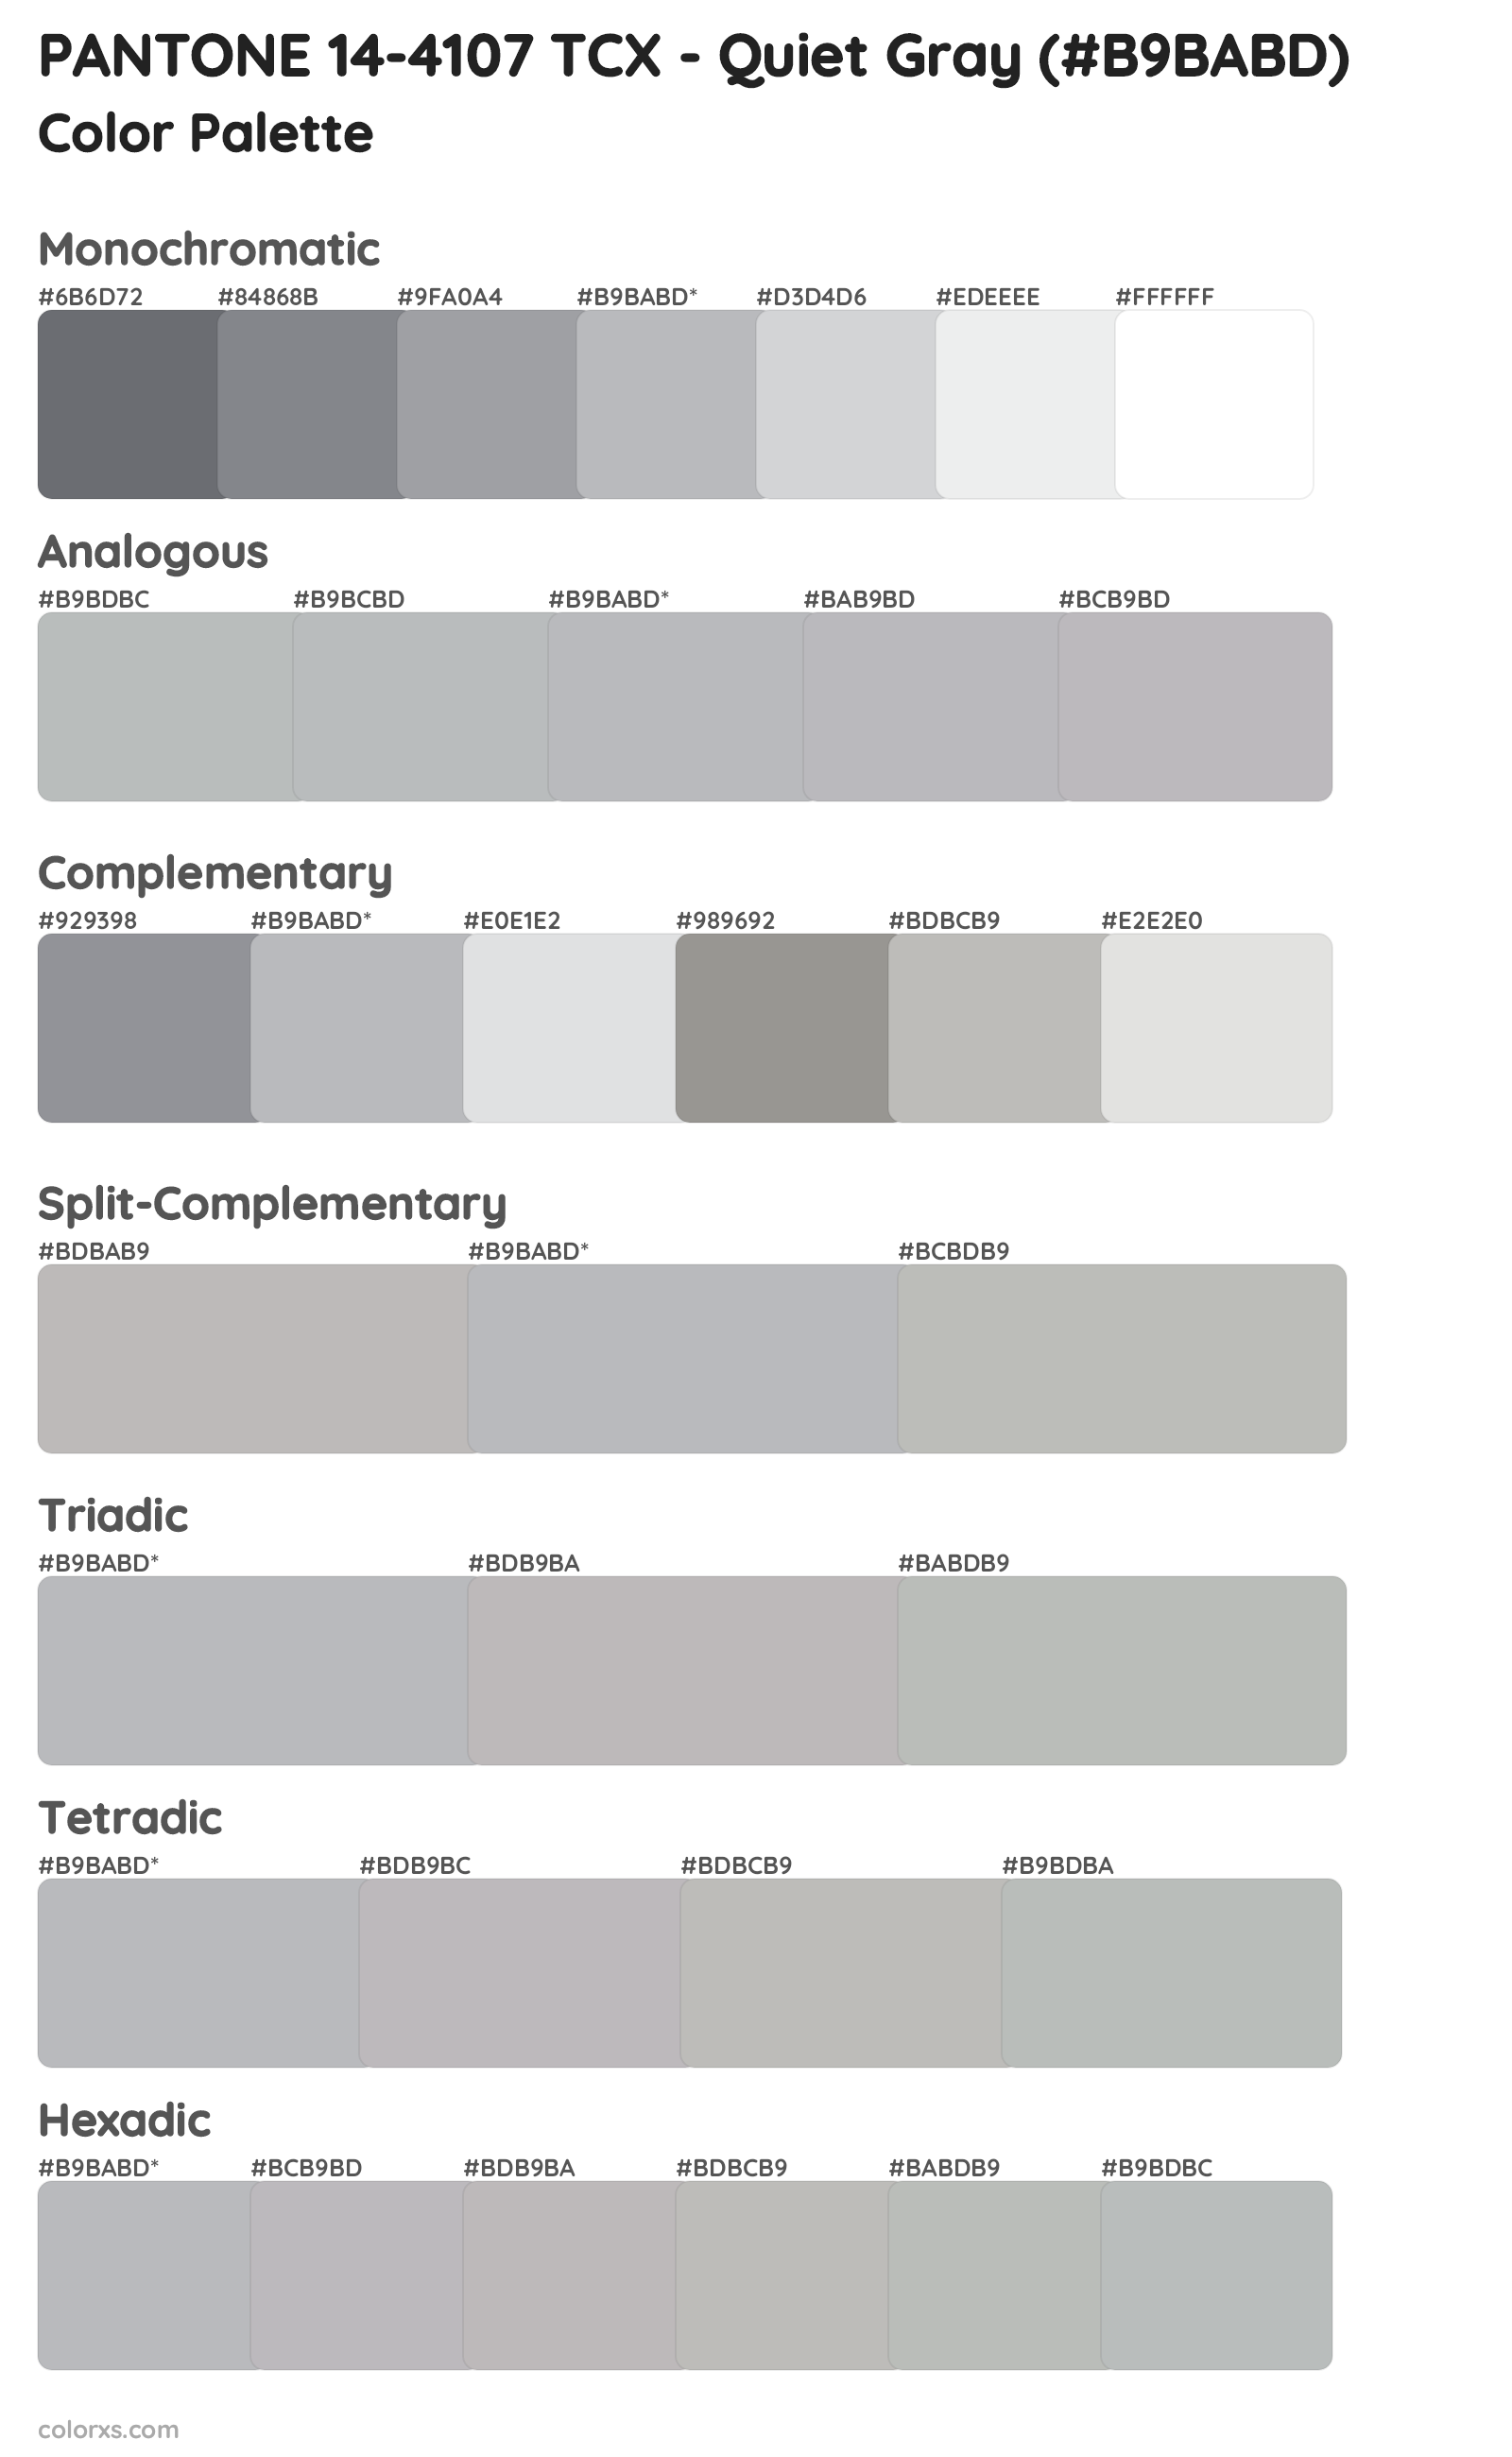 PANTONE 14-4107 TCX - Quiet Gray Color Scheme Palettes